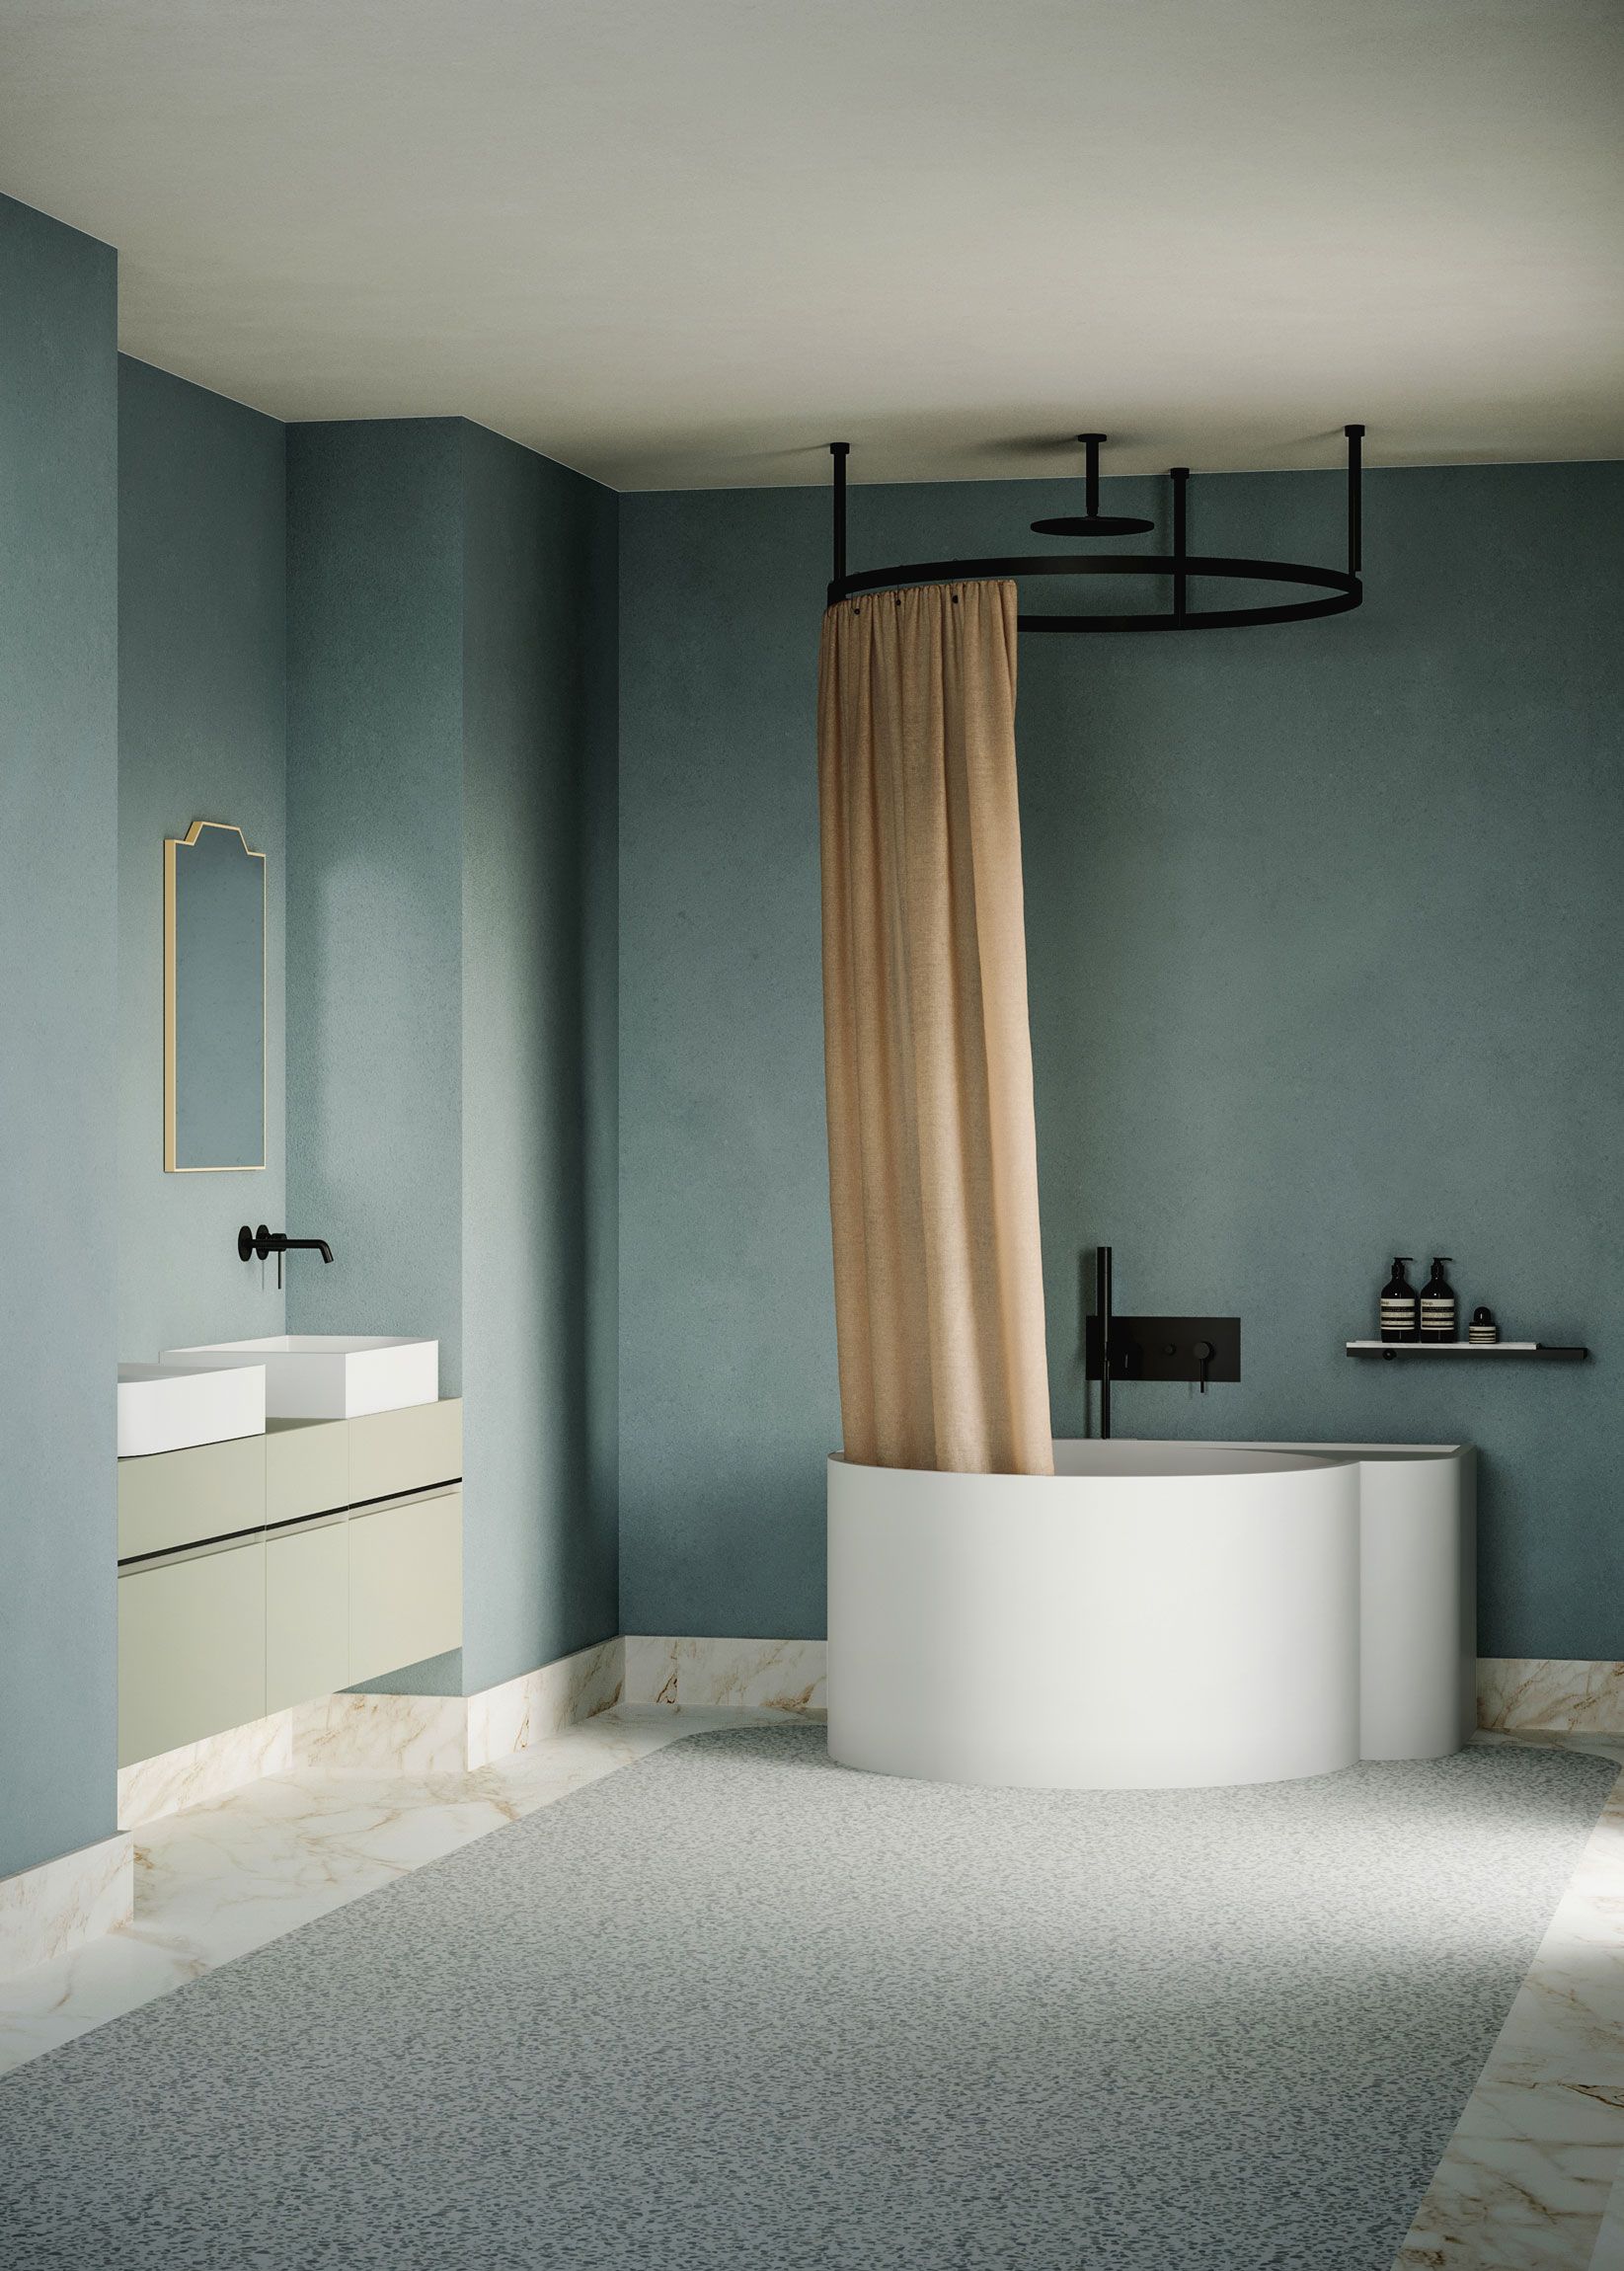 Round Bathtub with Shower Curtain